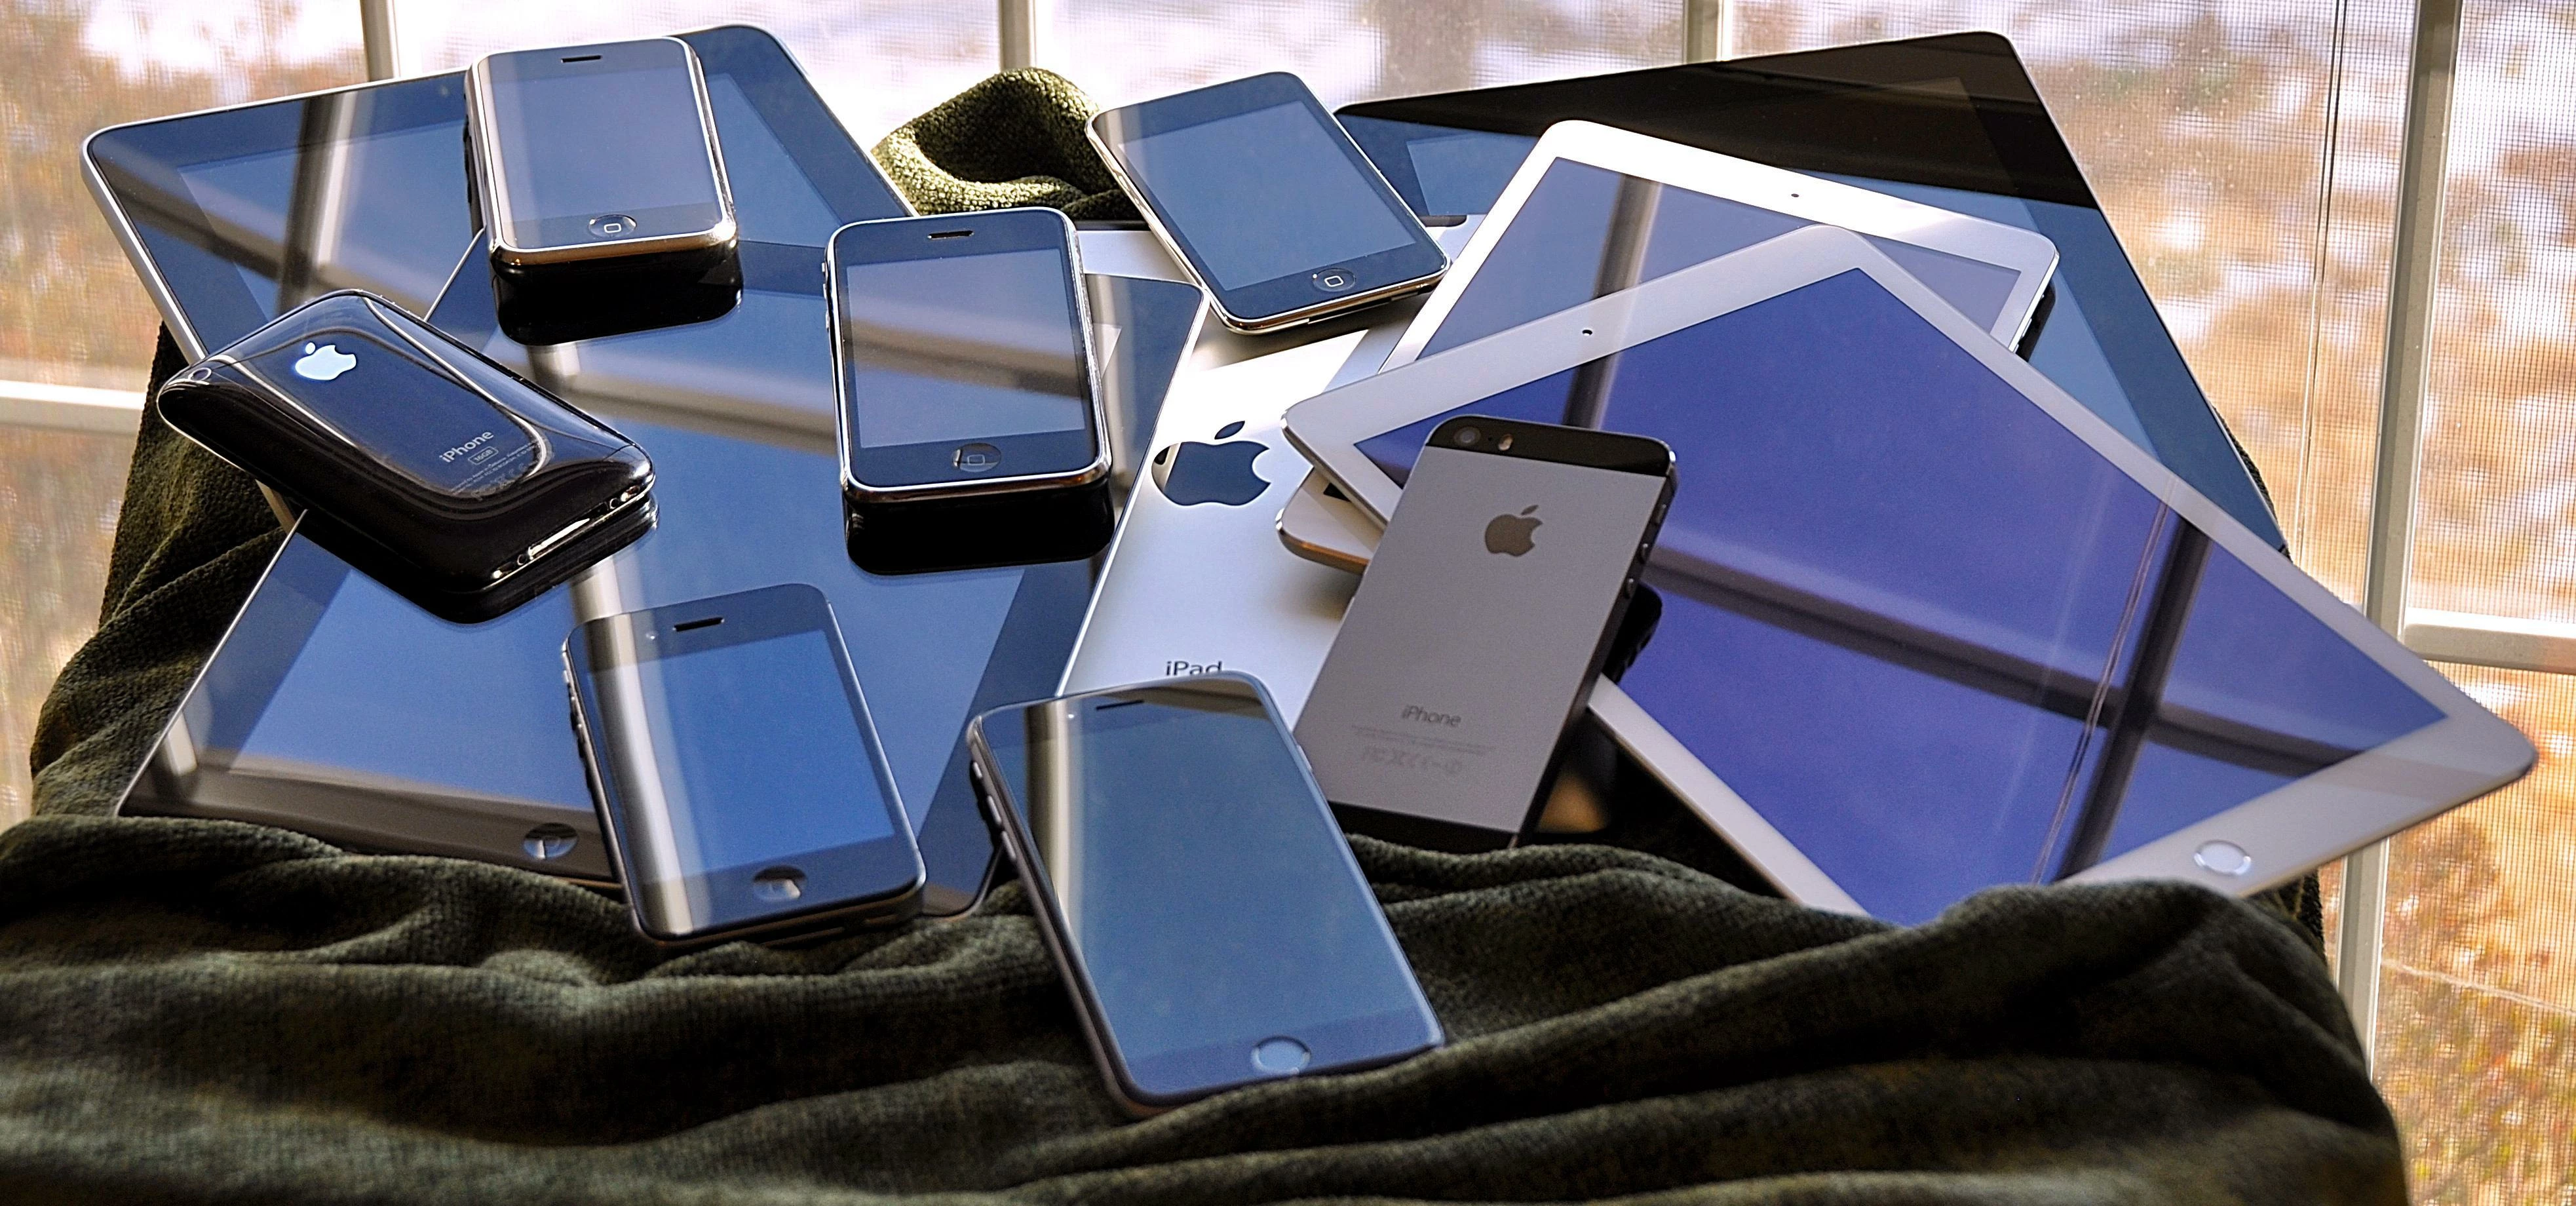 the iOS family pile (2015)